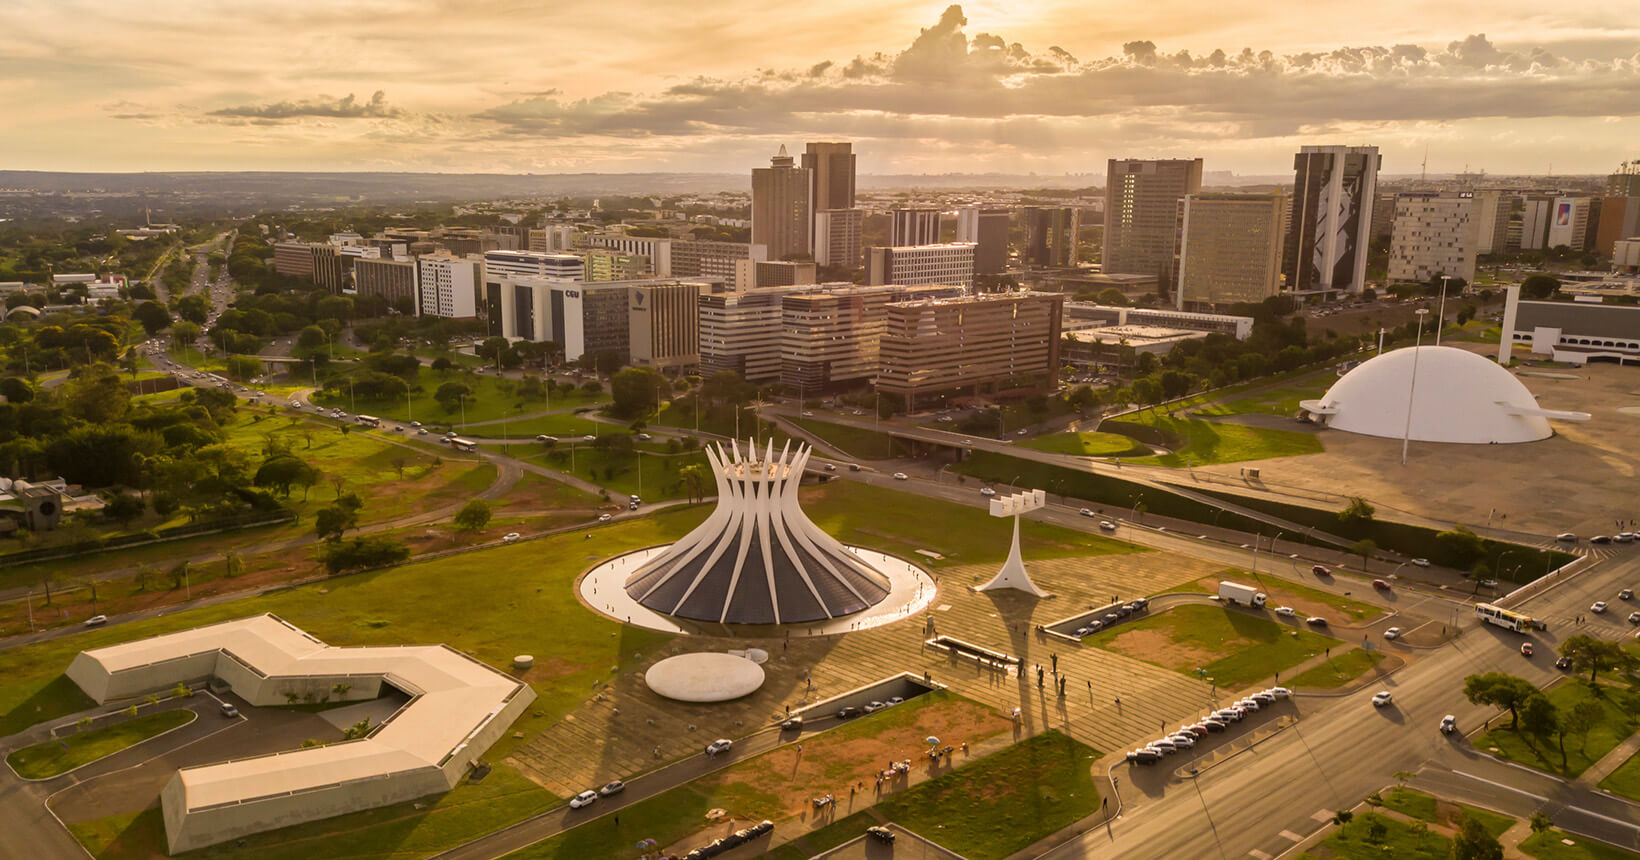 Imagem aérea da cidade de Brasília, Distrito Federal.